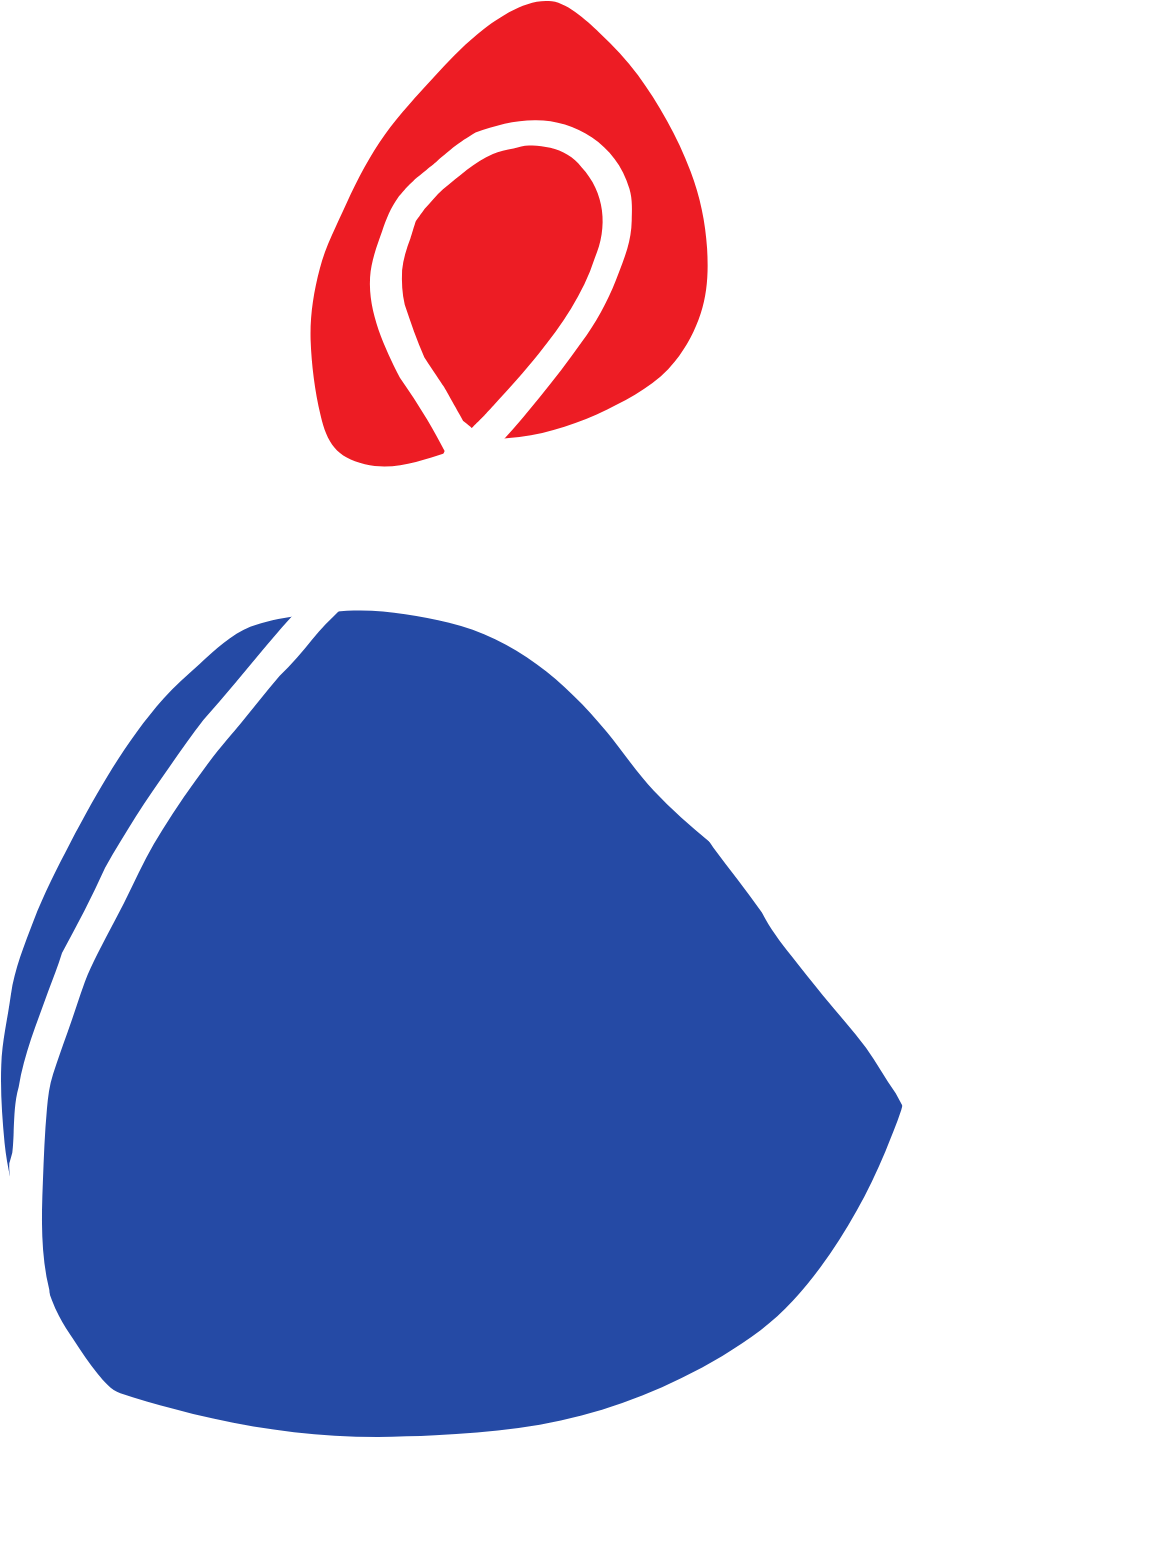 Mitsui Fudosan logo pour fonds sombres (PNG transparent)